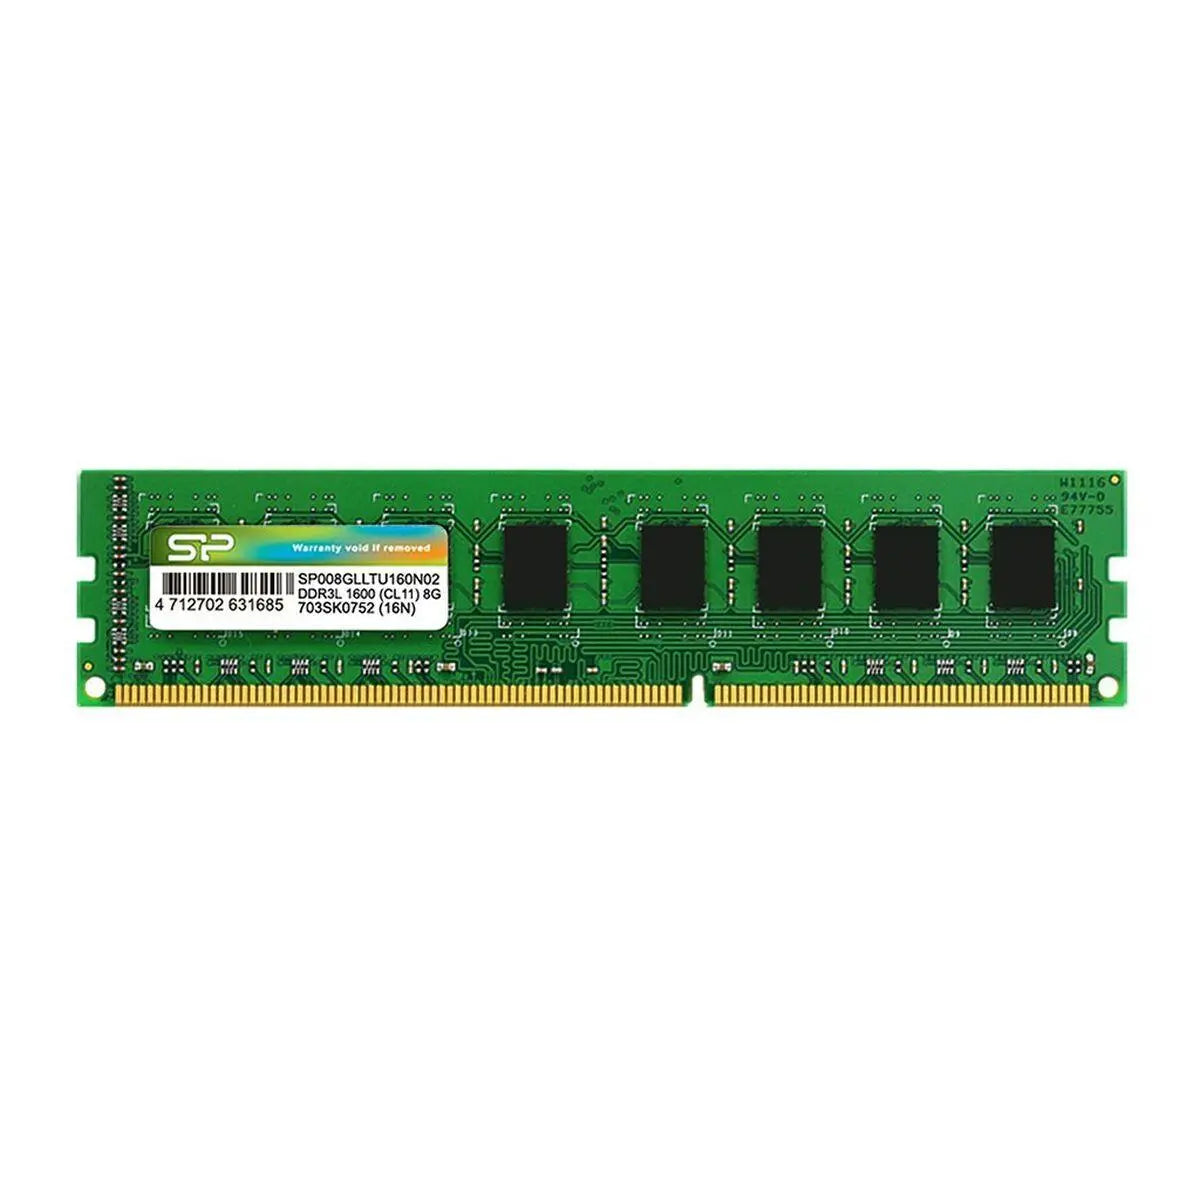 RAM Memory Silicon Power SP004GLLTU160N02 DDR3L CL11 4 GB - IGSI Europe Ltd